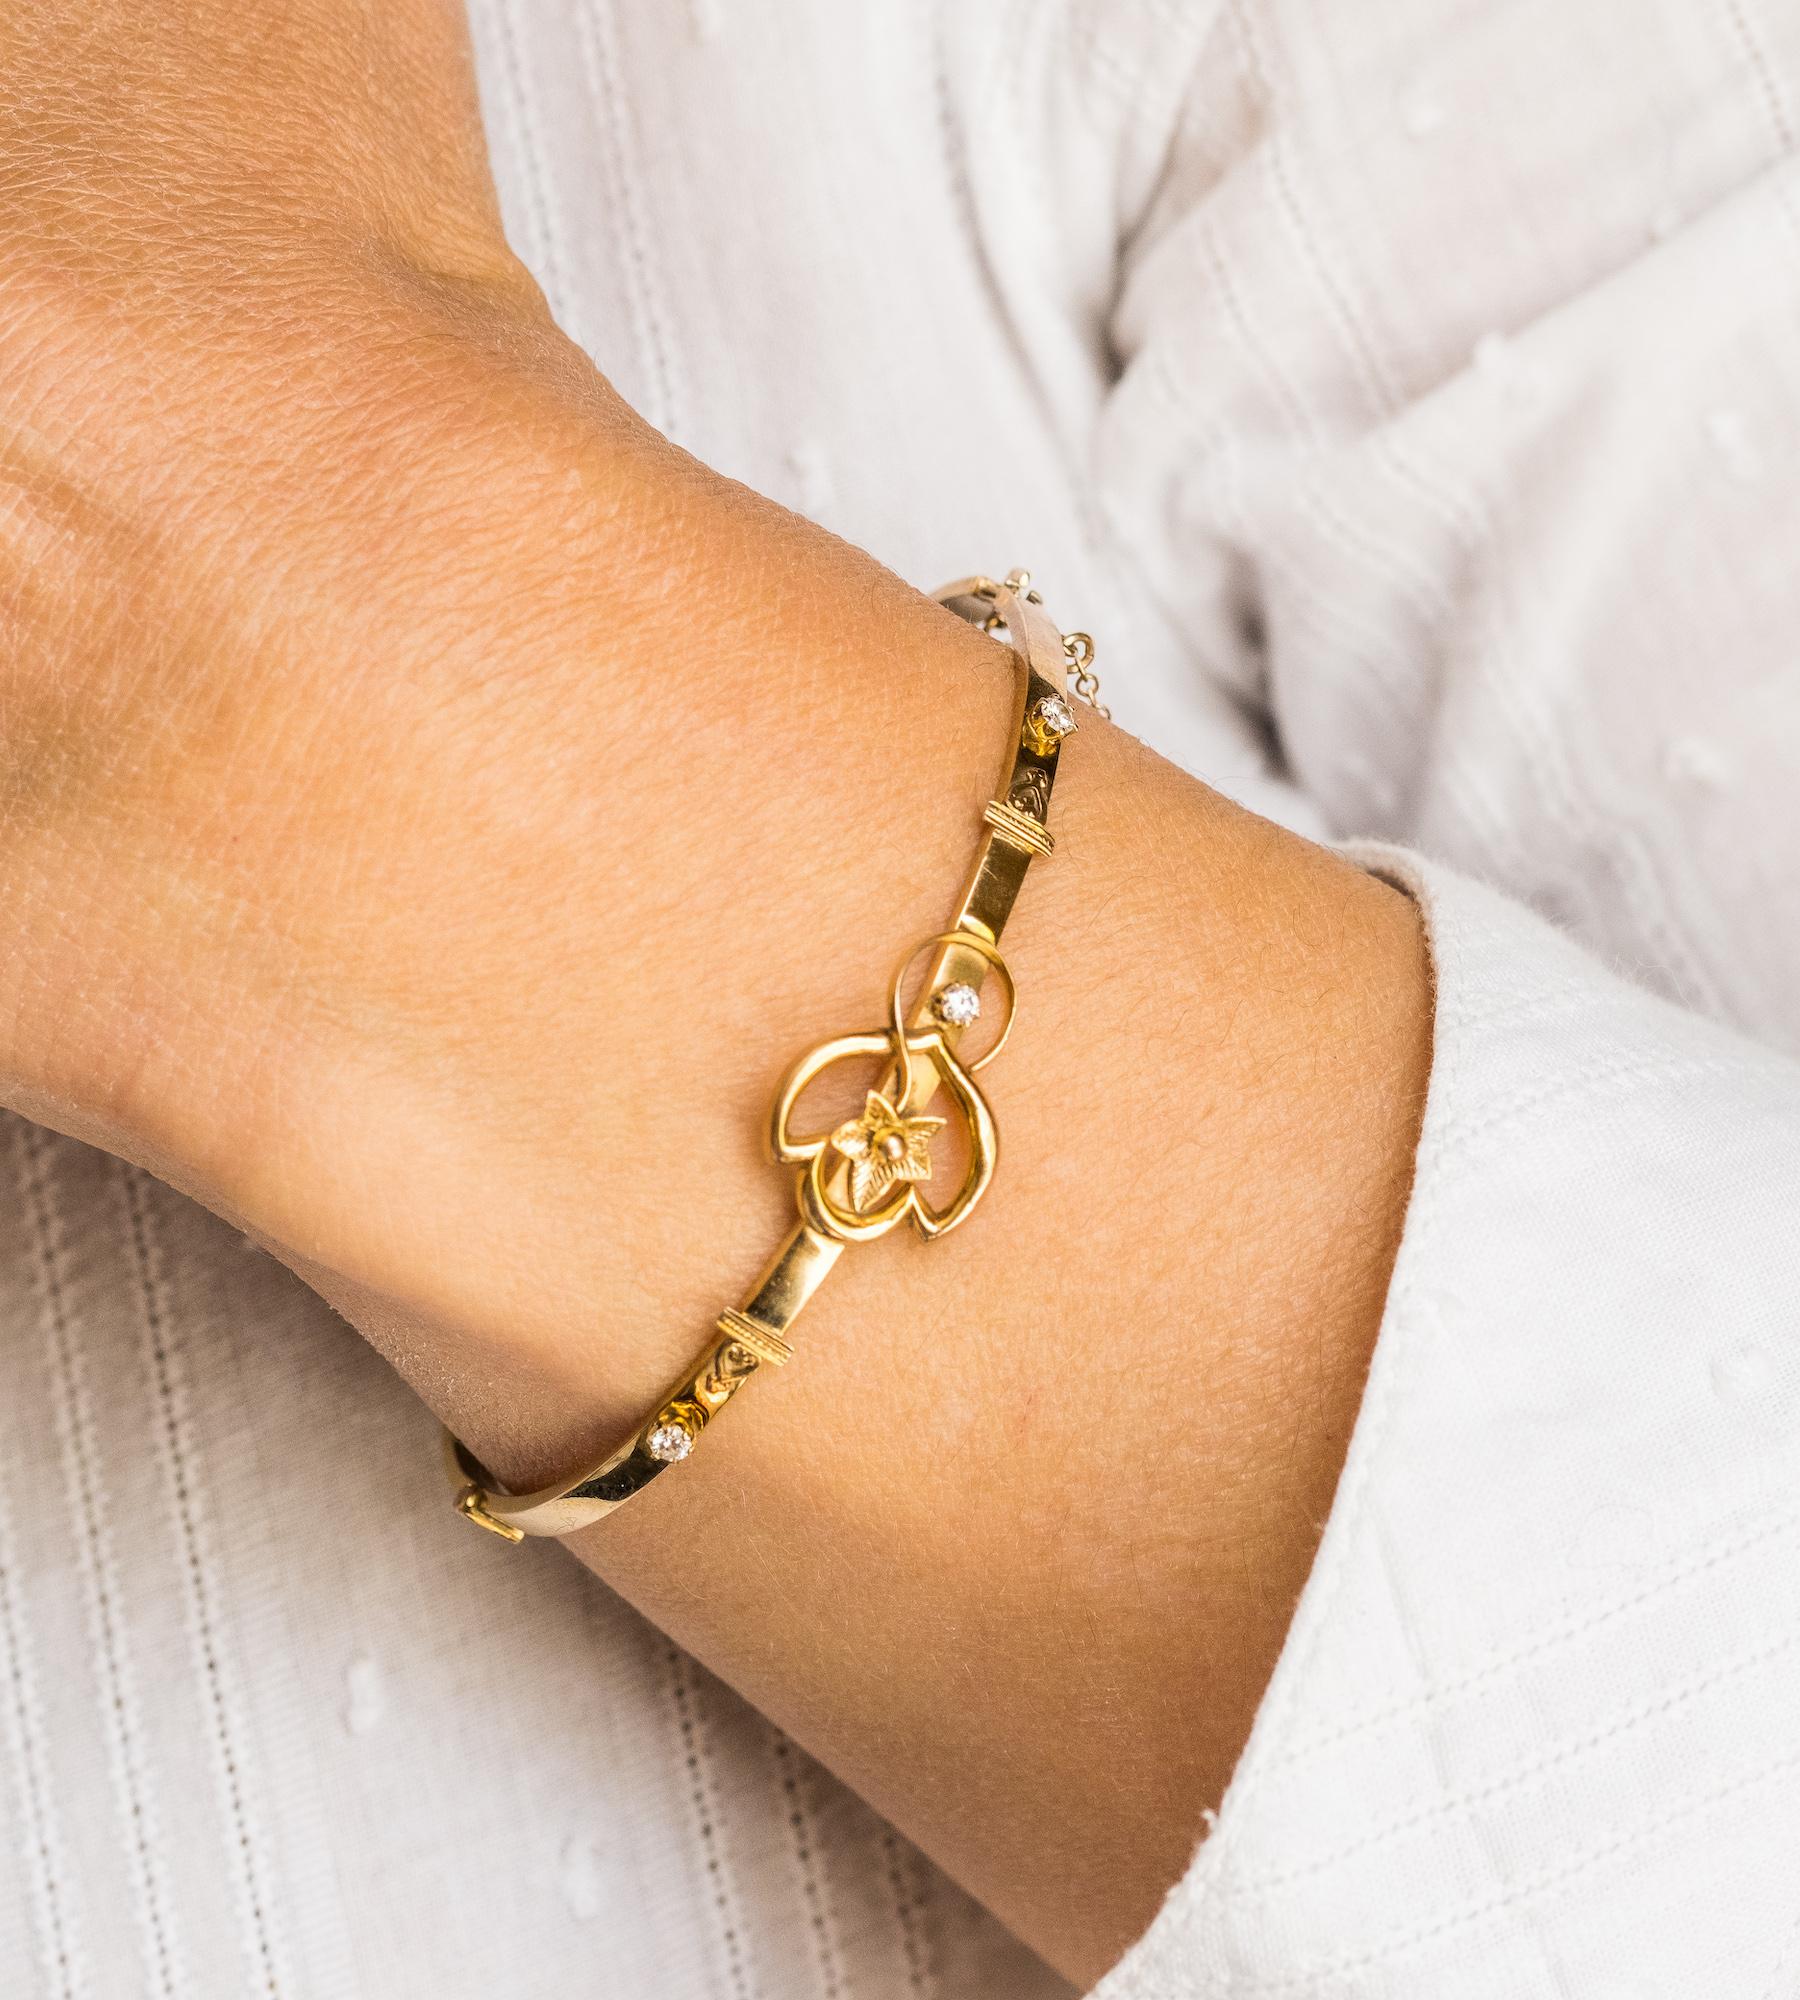 Un exquis bracelet cannetille en or 9ct de la fin de l'époque victorienne, au design complexe, comportant trois diamants taillés à l'ancienne et bien assortis. 
Le magnifique détail central en lierre symbolise l'amour éternel, l'immortalité et la